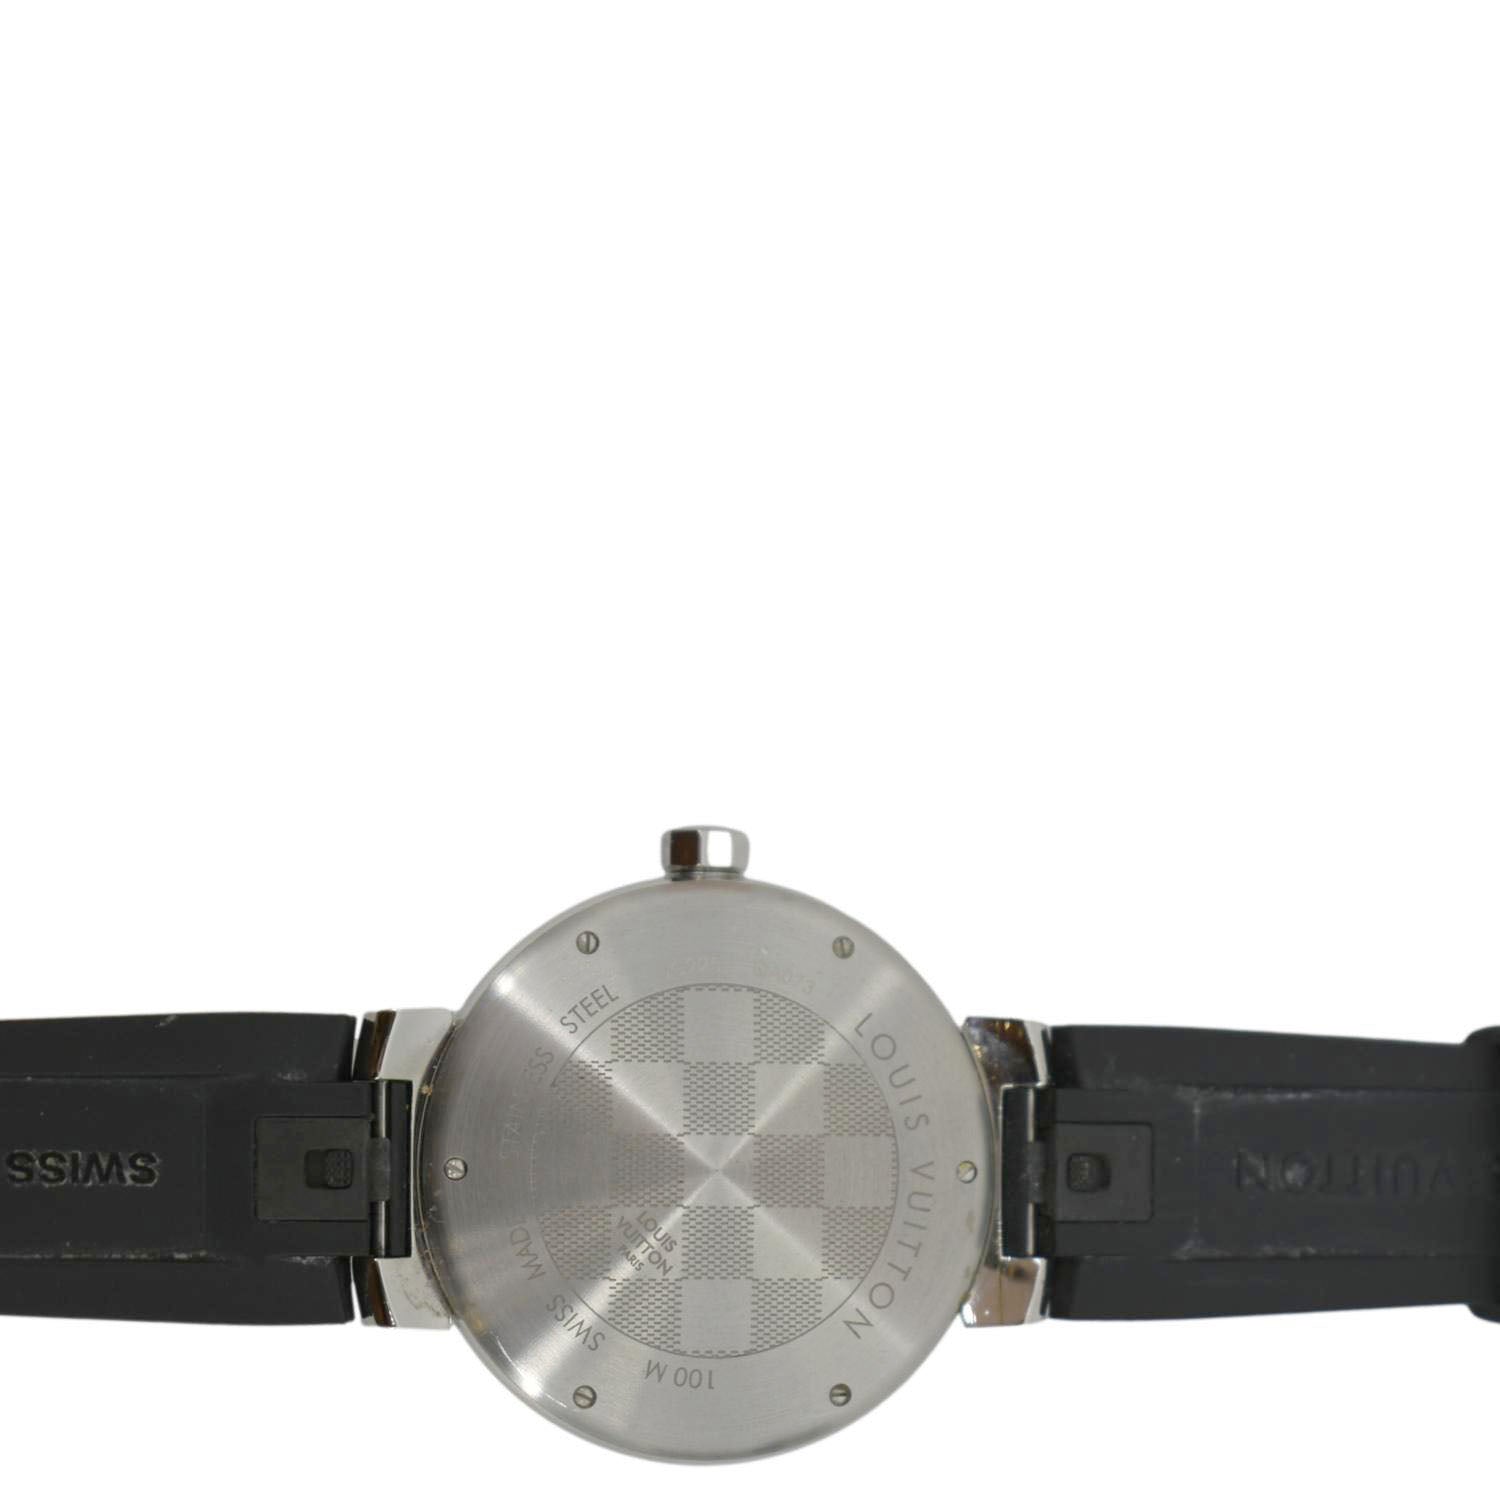 Louis Vuitton Tambour Damier Graphite watch